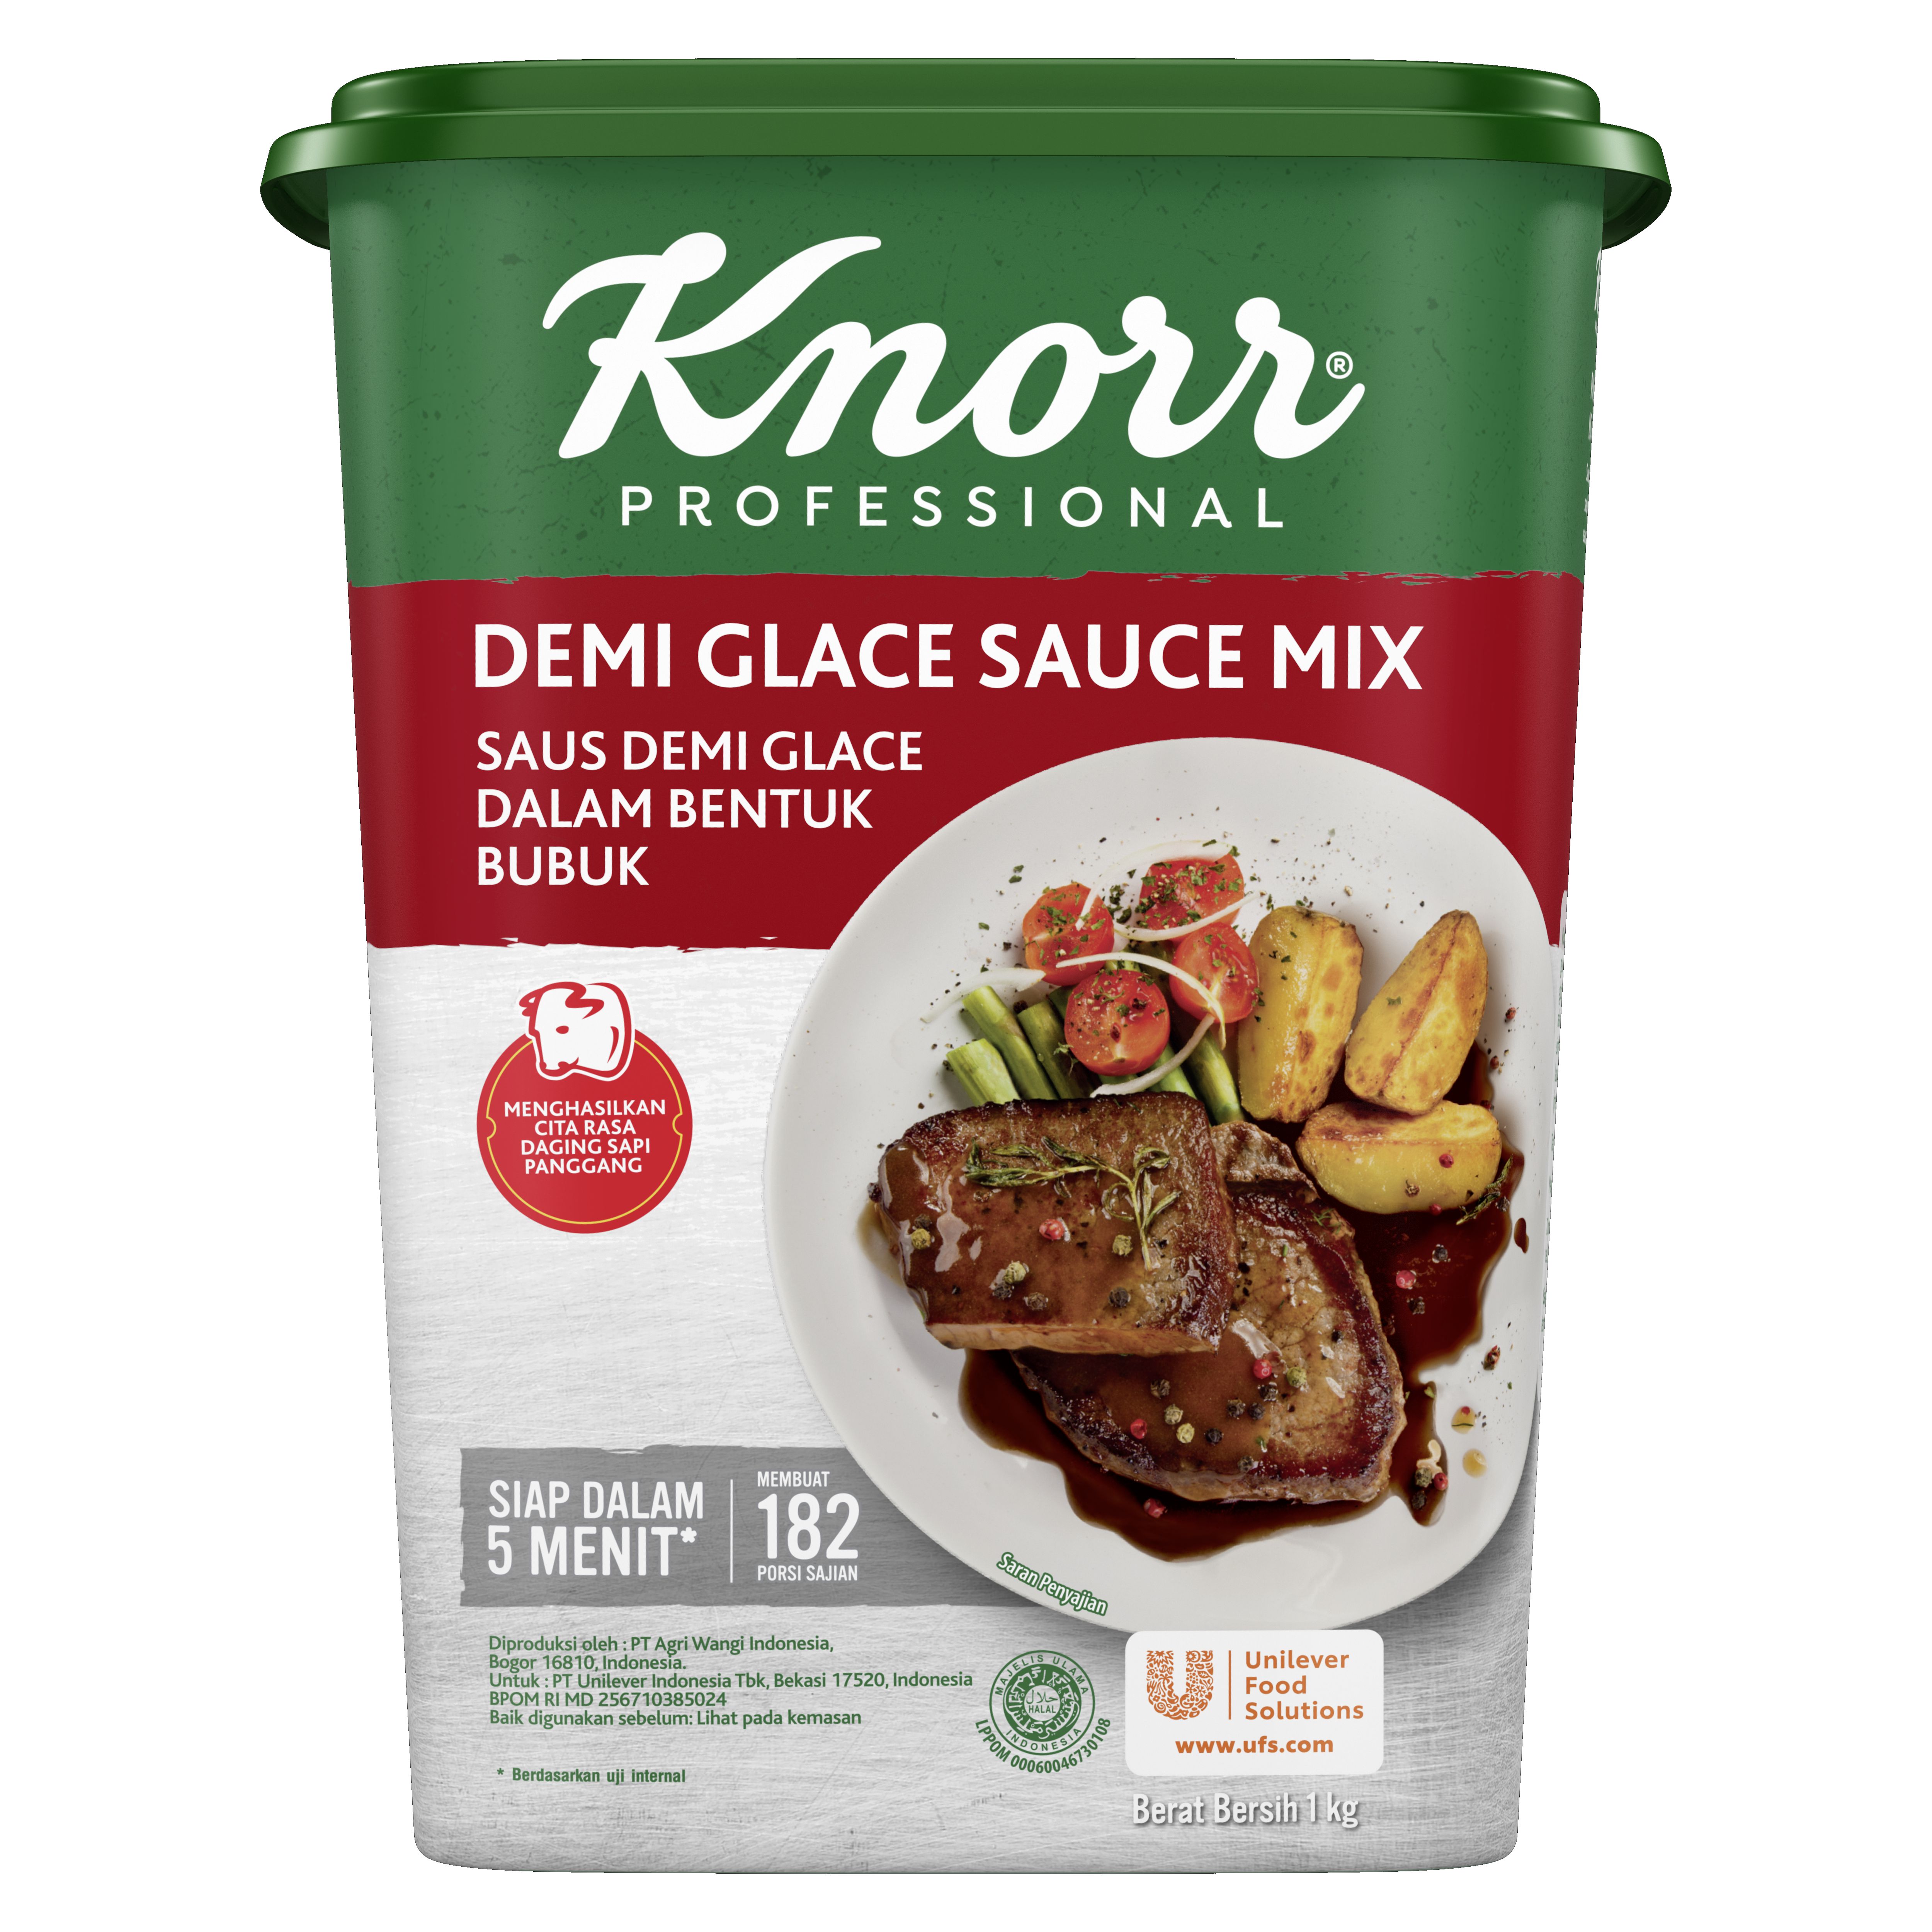 Knorr Saus Demi Glace 1kg - Knorr Demi Glace, membuat saus demi glace berkualitas dan konsisten dalam waktu singkat